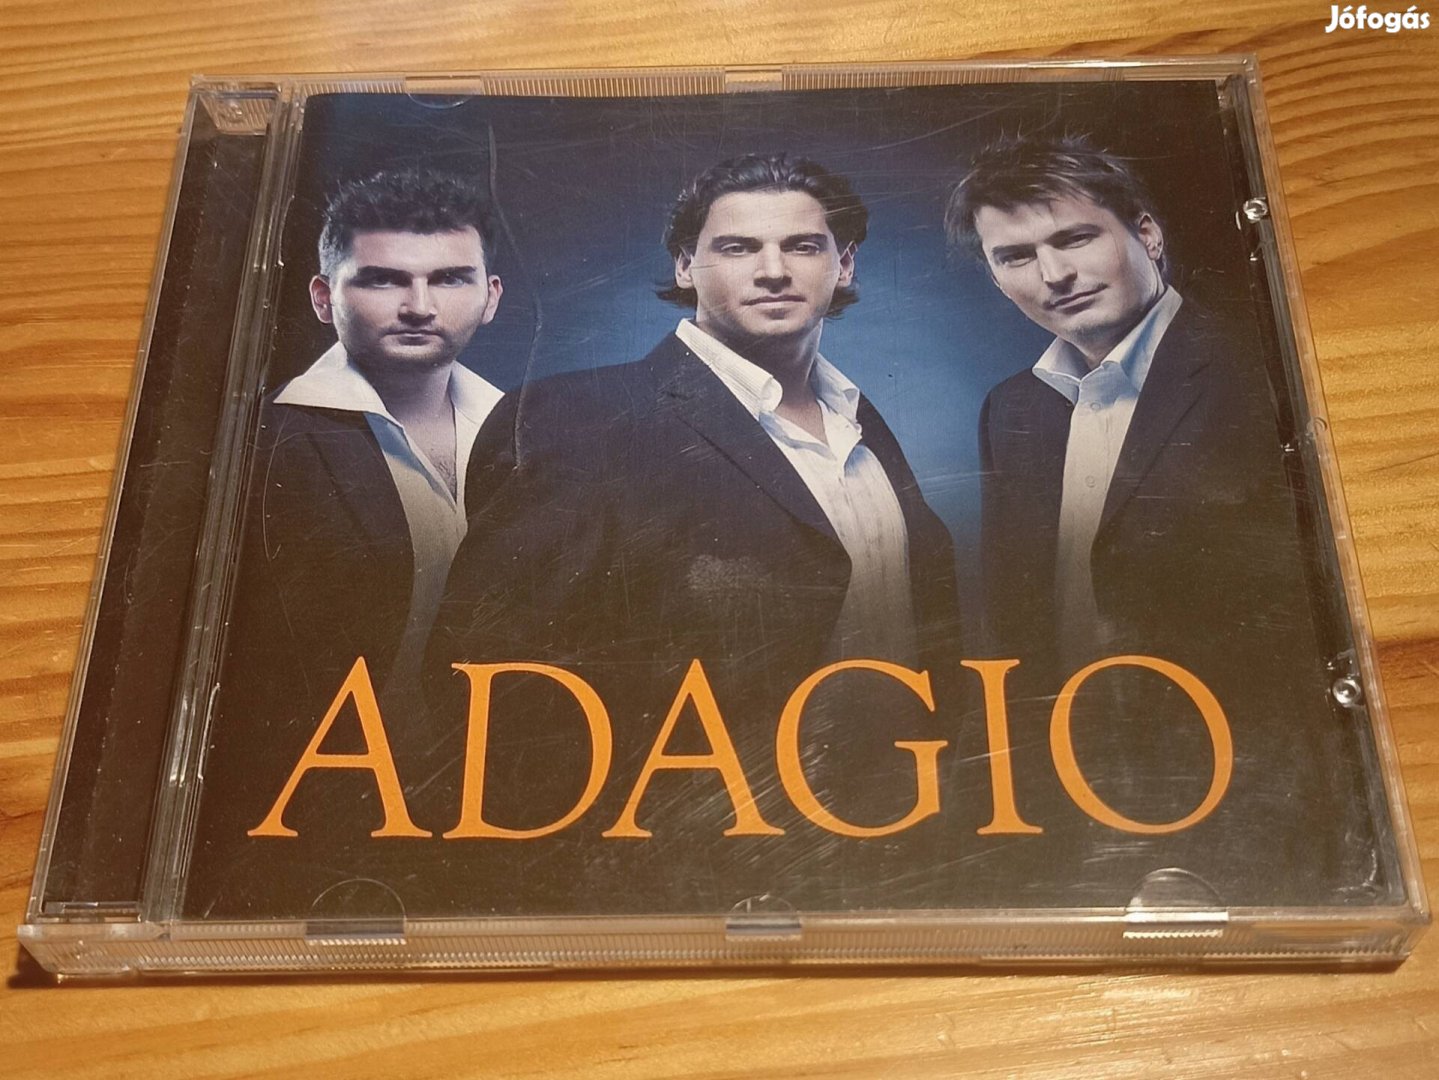 Adagio - Adagio CD 2005